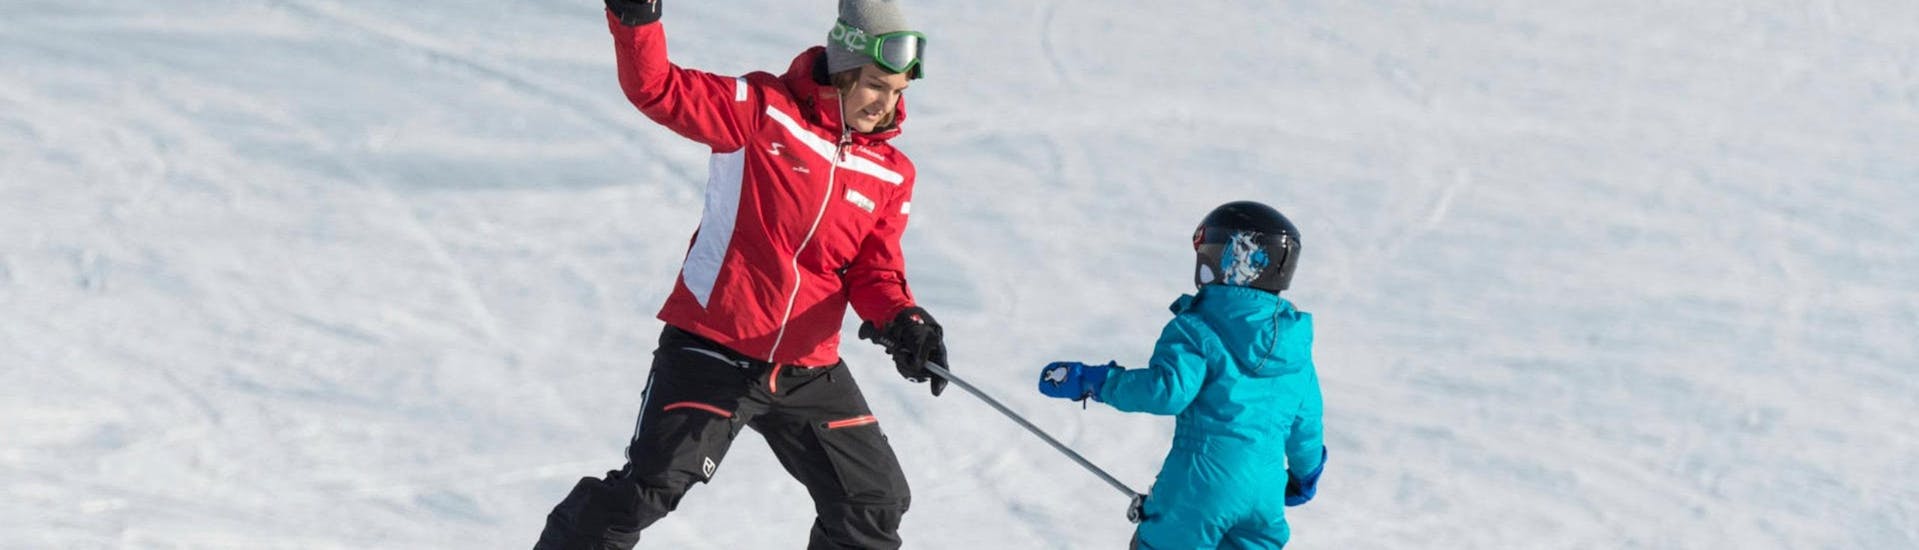 Clases de esquí privadas para niños a partir de 4 años para debutantes.